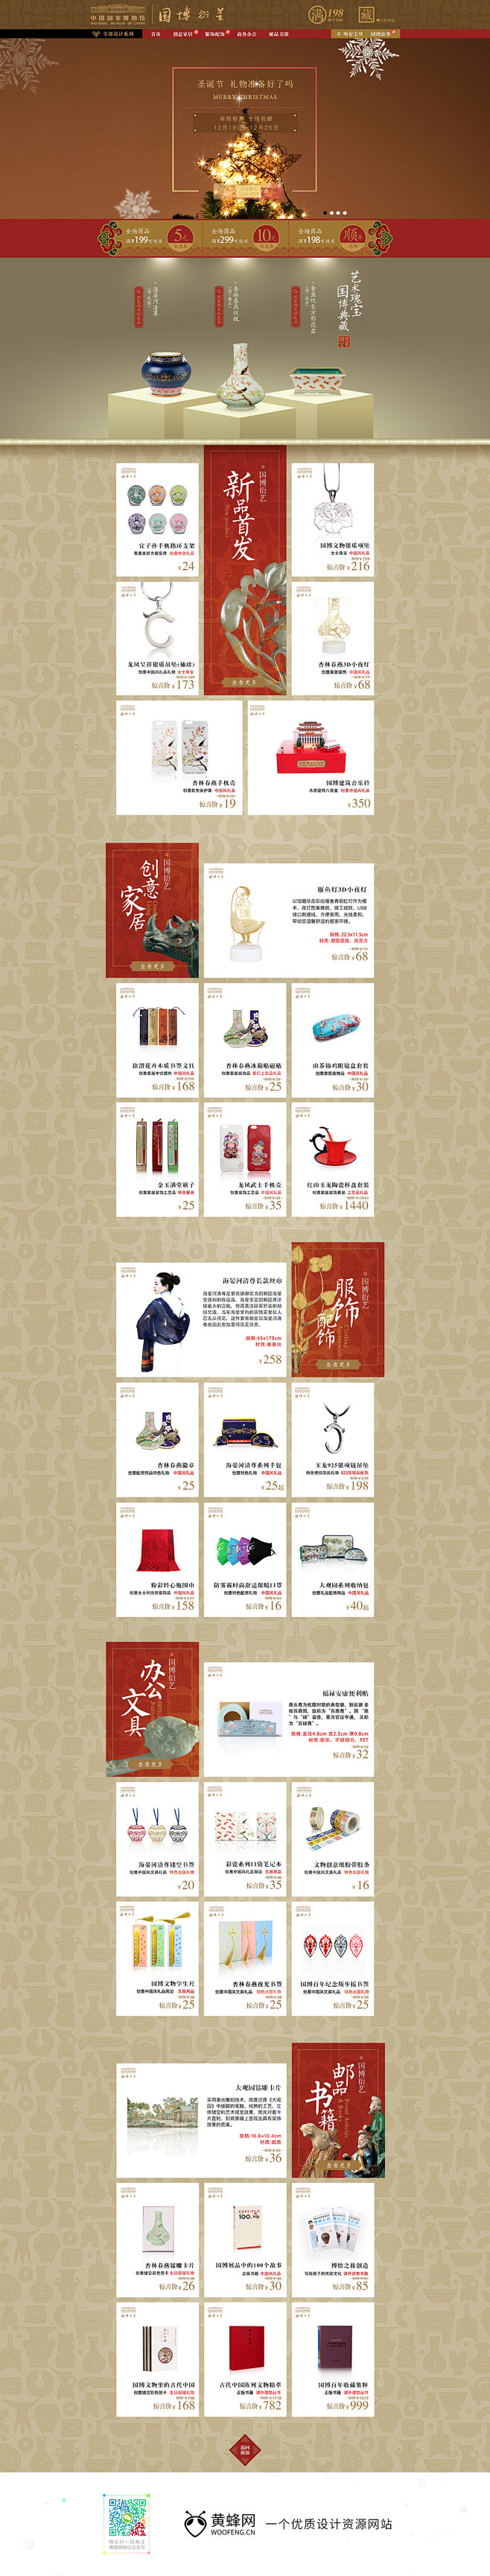 中国国家博物馆古典中国风天猫首页活动专题...